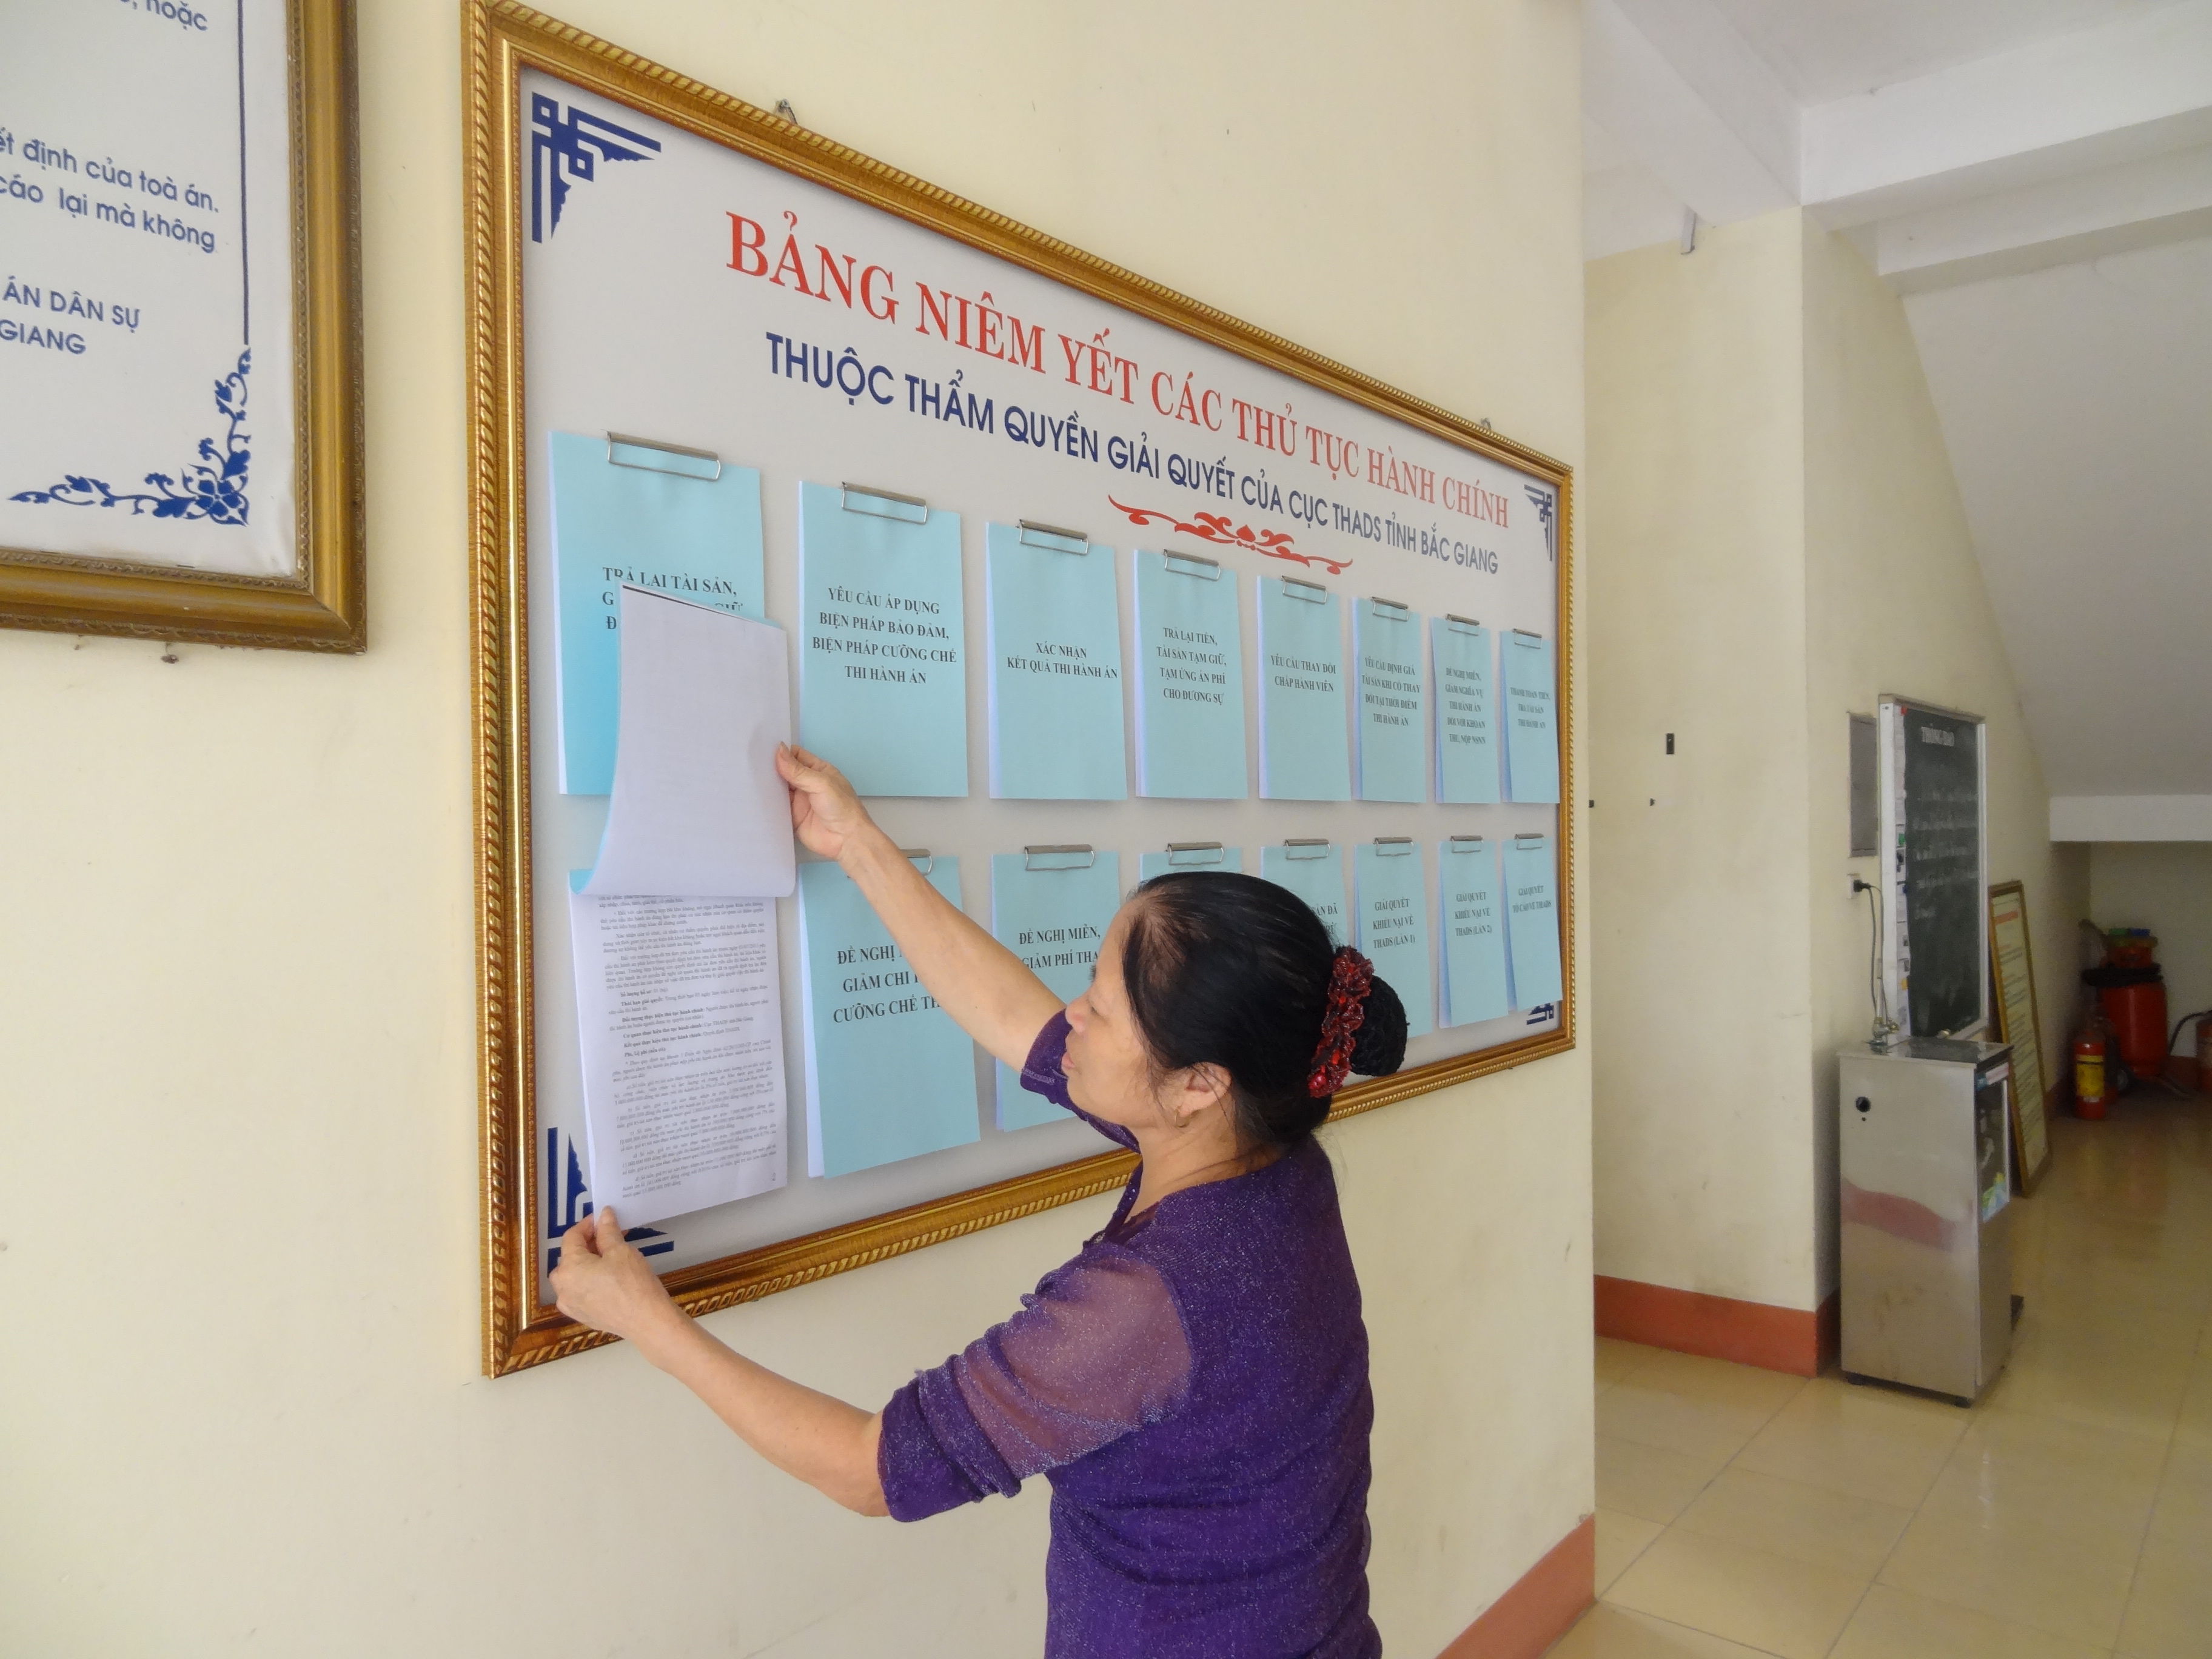 Cục Thi hành án dân sự tỉnh Bắc Giang thực hiện niêm yết công khai thủ tục hành chính góp phần giải quyết tốt hơn công việc của tổ chức, cá nhân trong hoạt động THADS